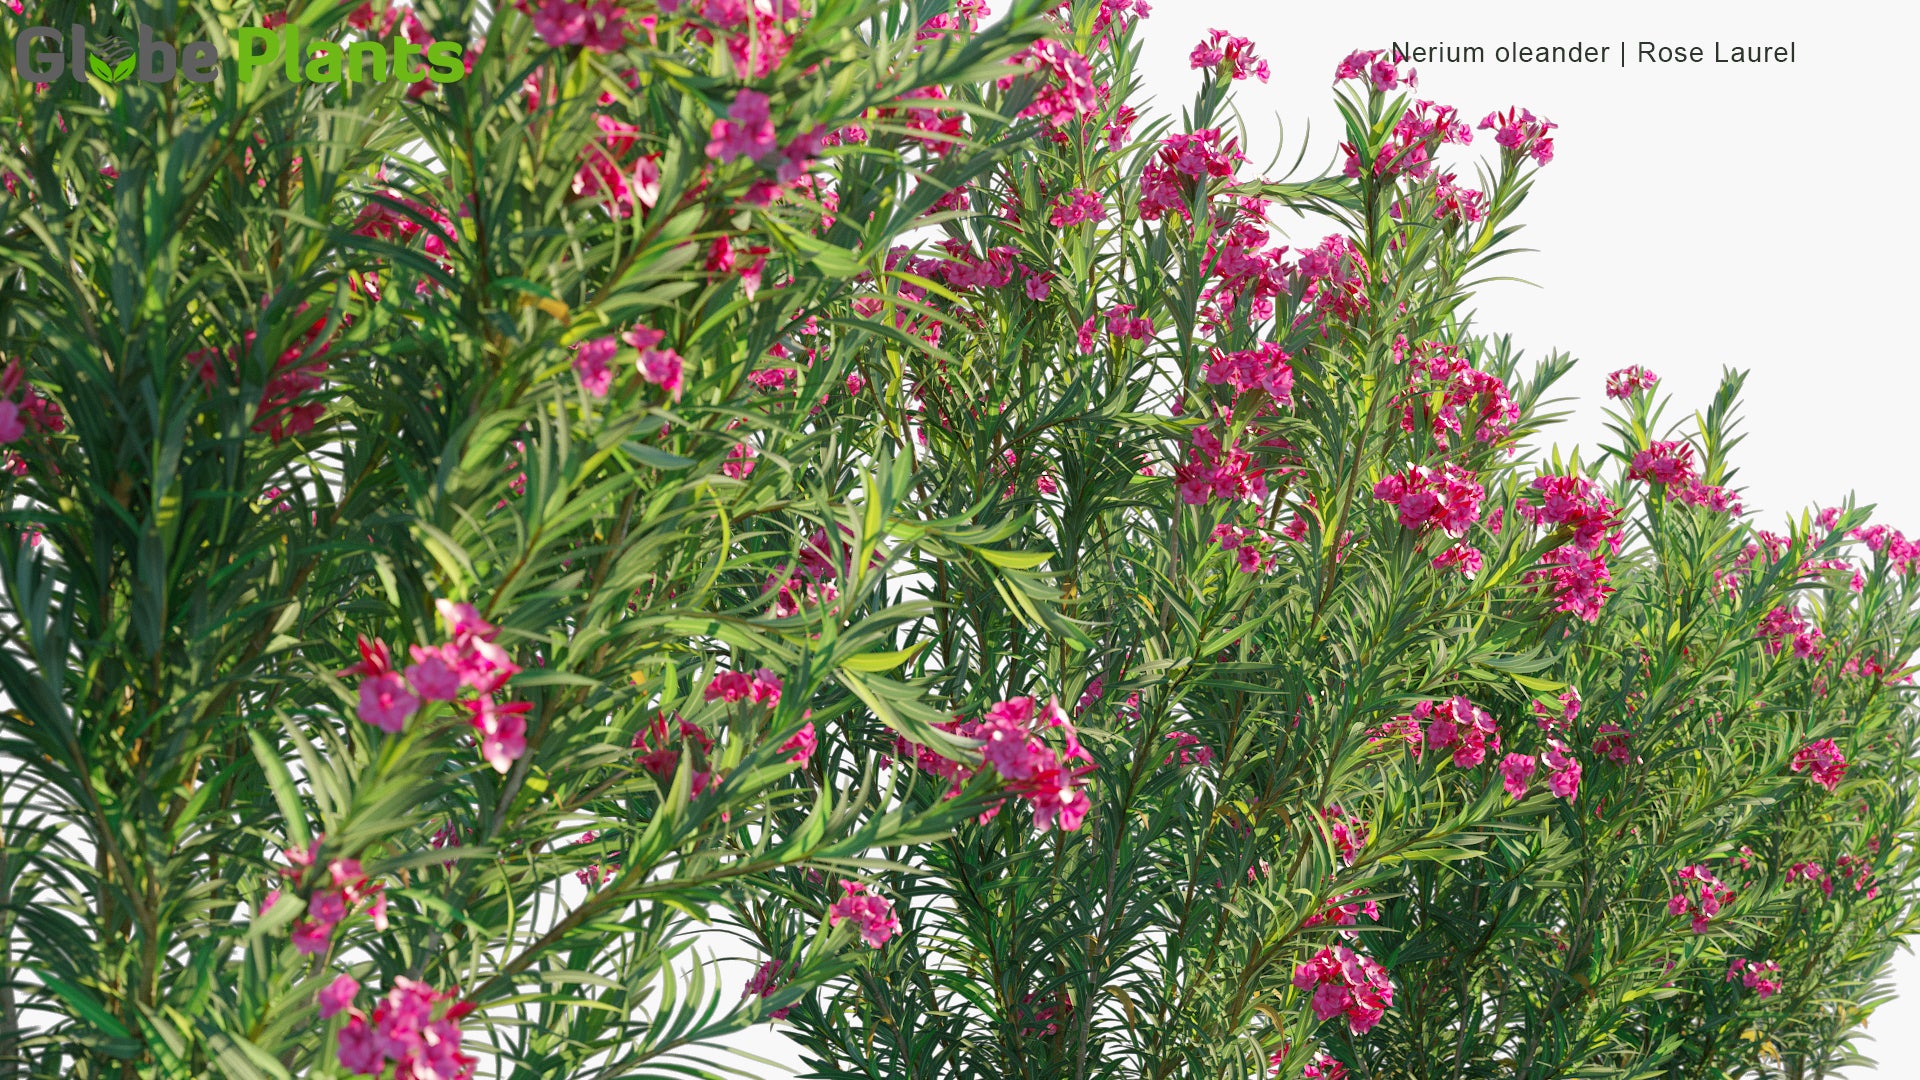 Nerium Oleander - Rose Laurel